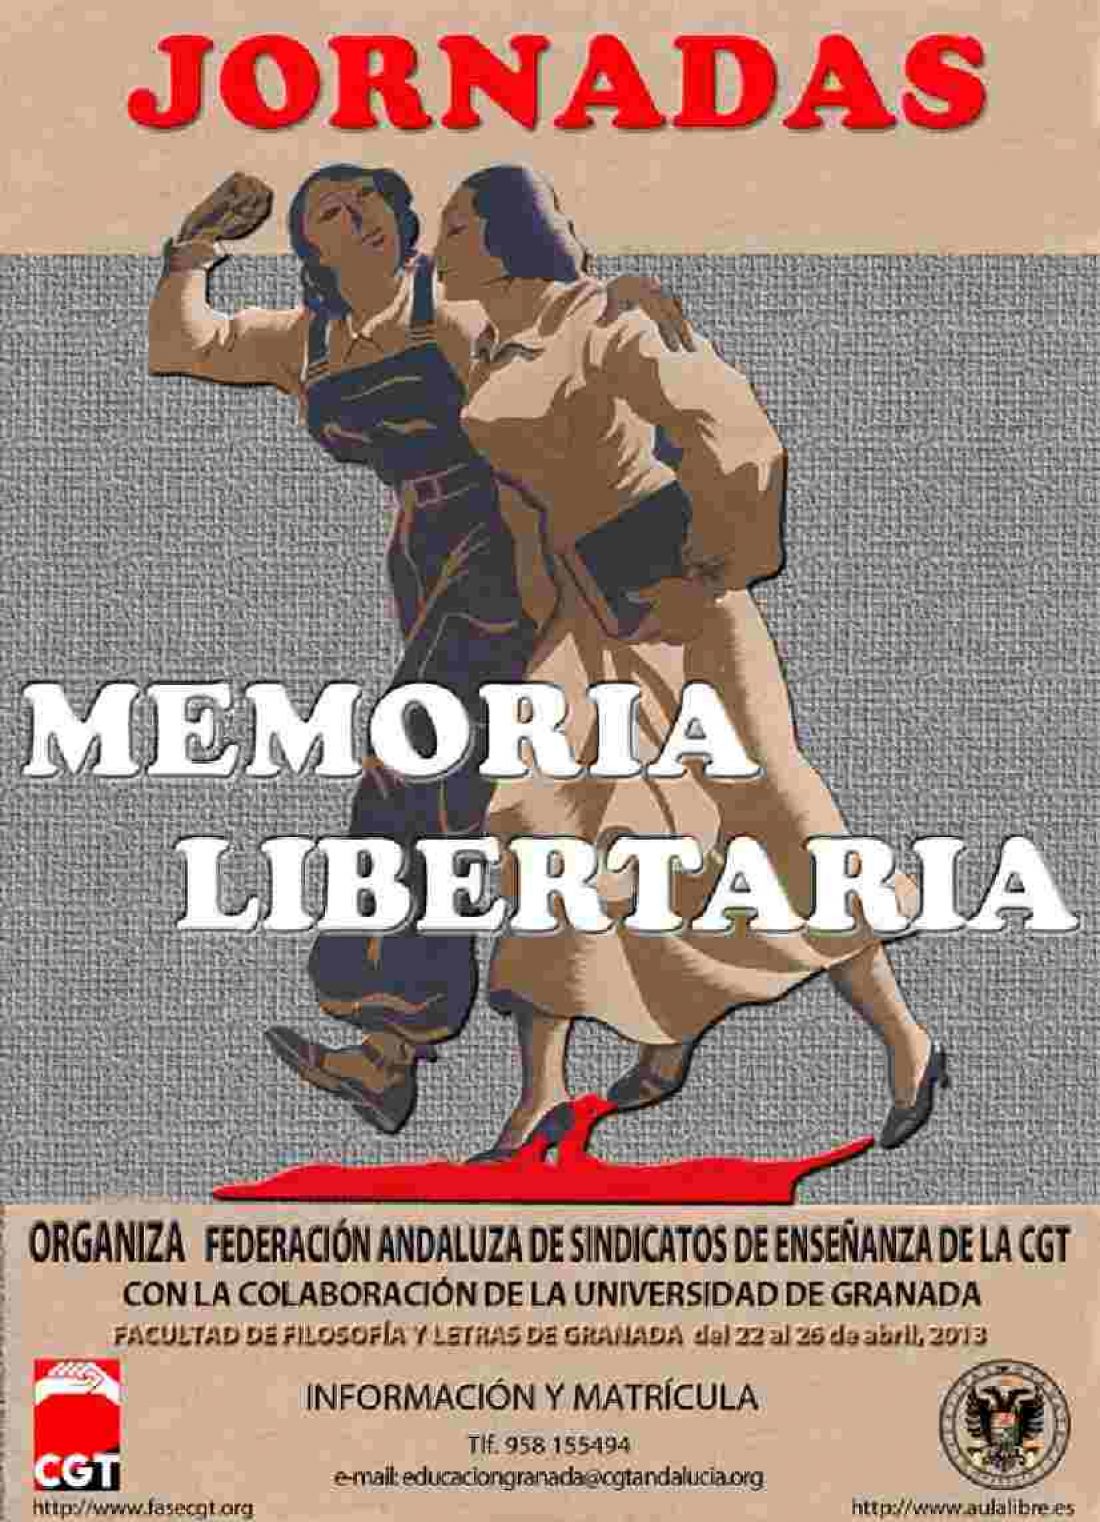 Granada. La CGT organiza las Jornadas Memoria Libertaria y Lucha Sociales del 22 al 26 de abril